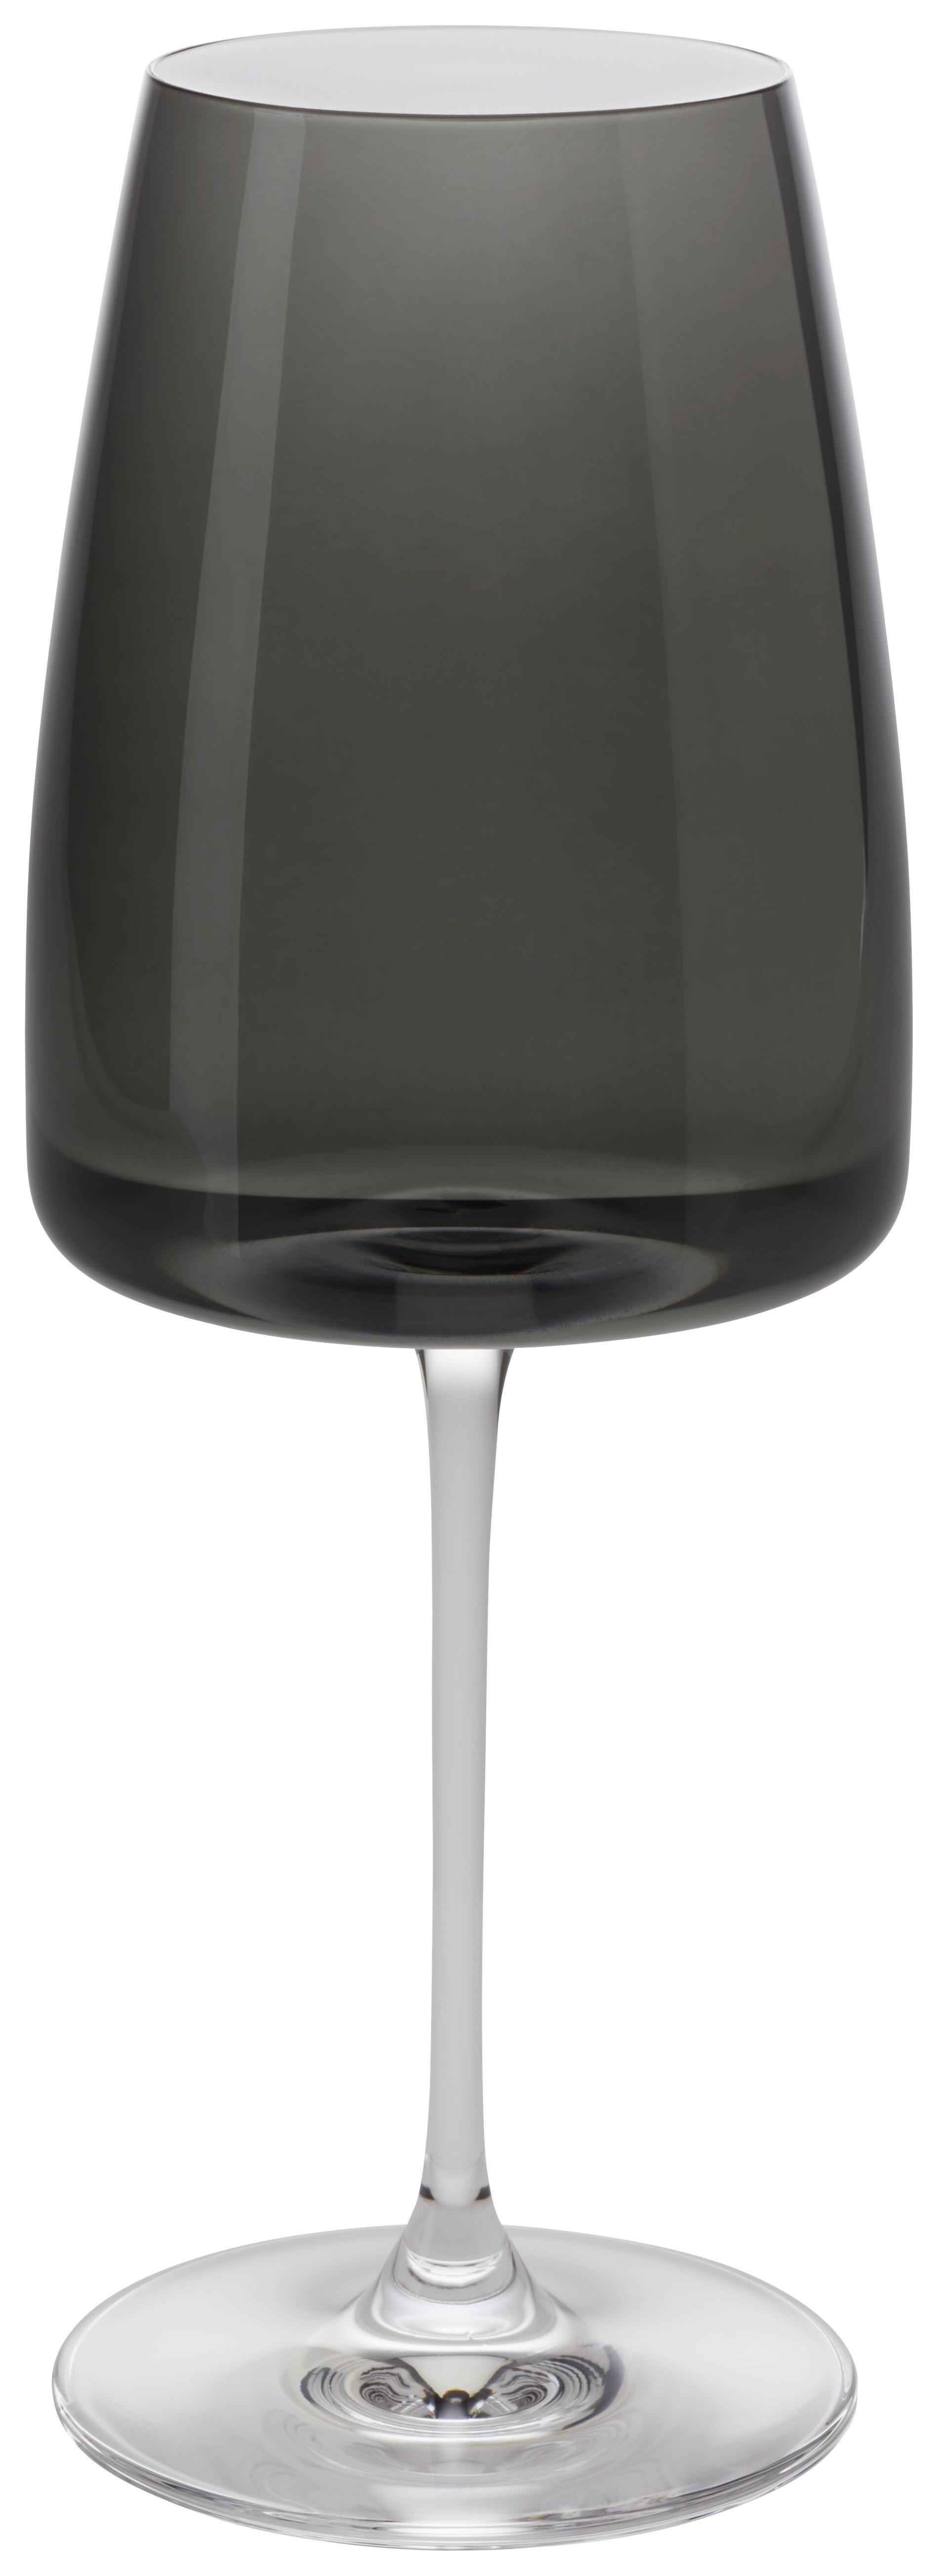 Sklenice Na Červené Víno Nicki - černá, Moderní, sklo (8,5/23cm) - Premium Living